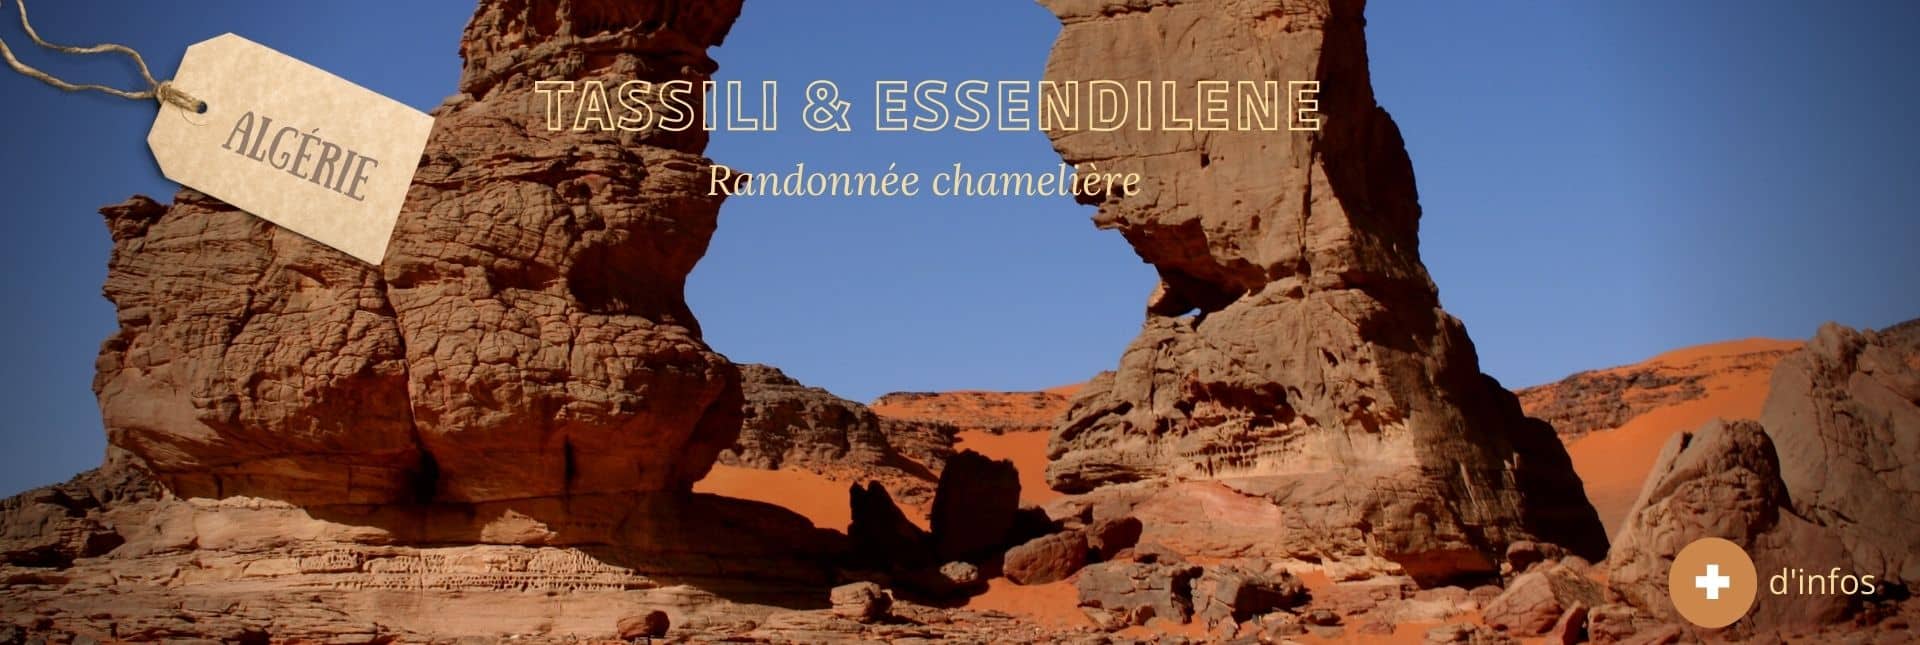 Arche de Tikoubaouine - Rando Tassili et Essendilene - Point-Afrique